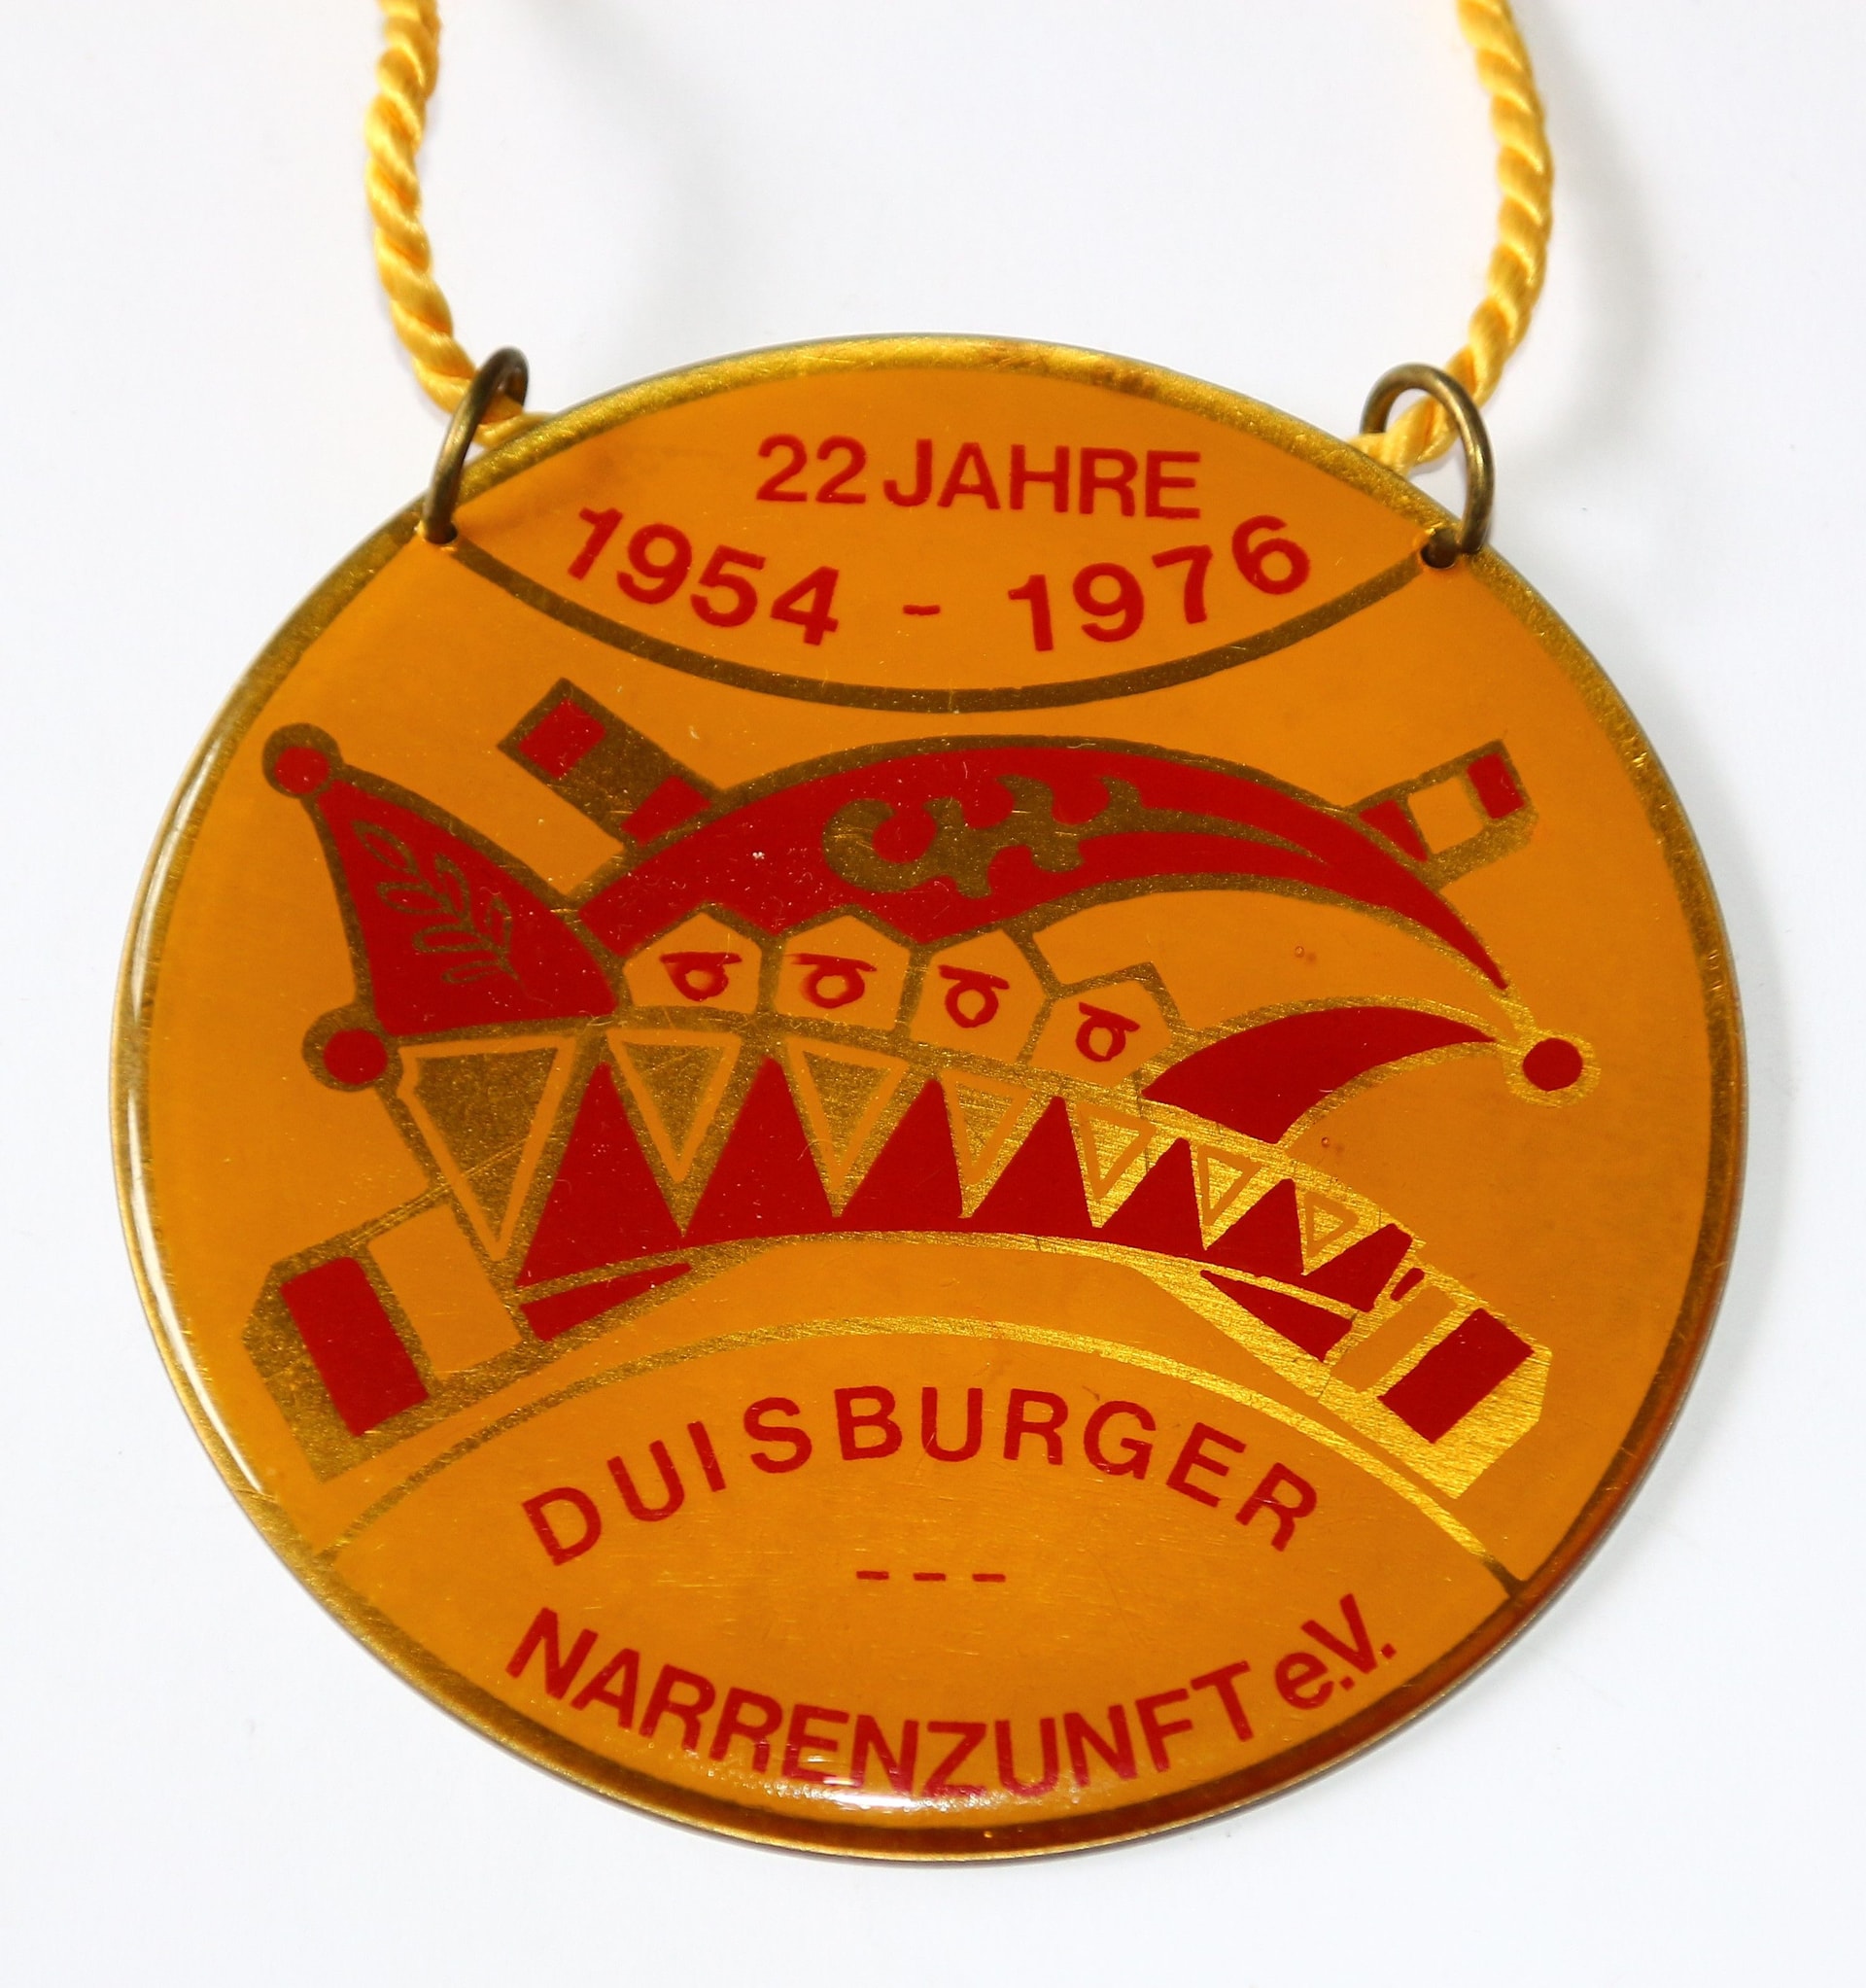 Duisburger Narrenzunft 1954 e.V.